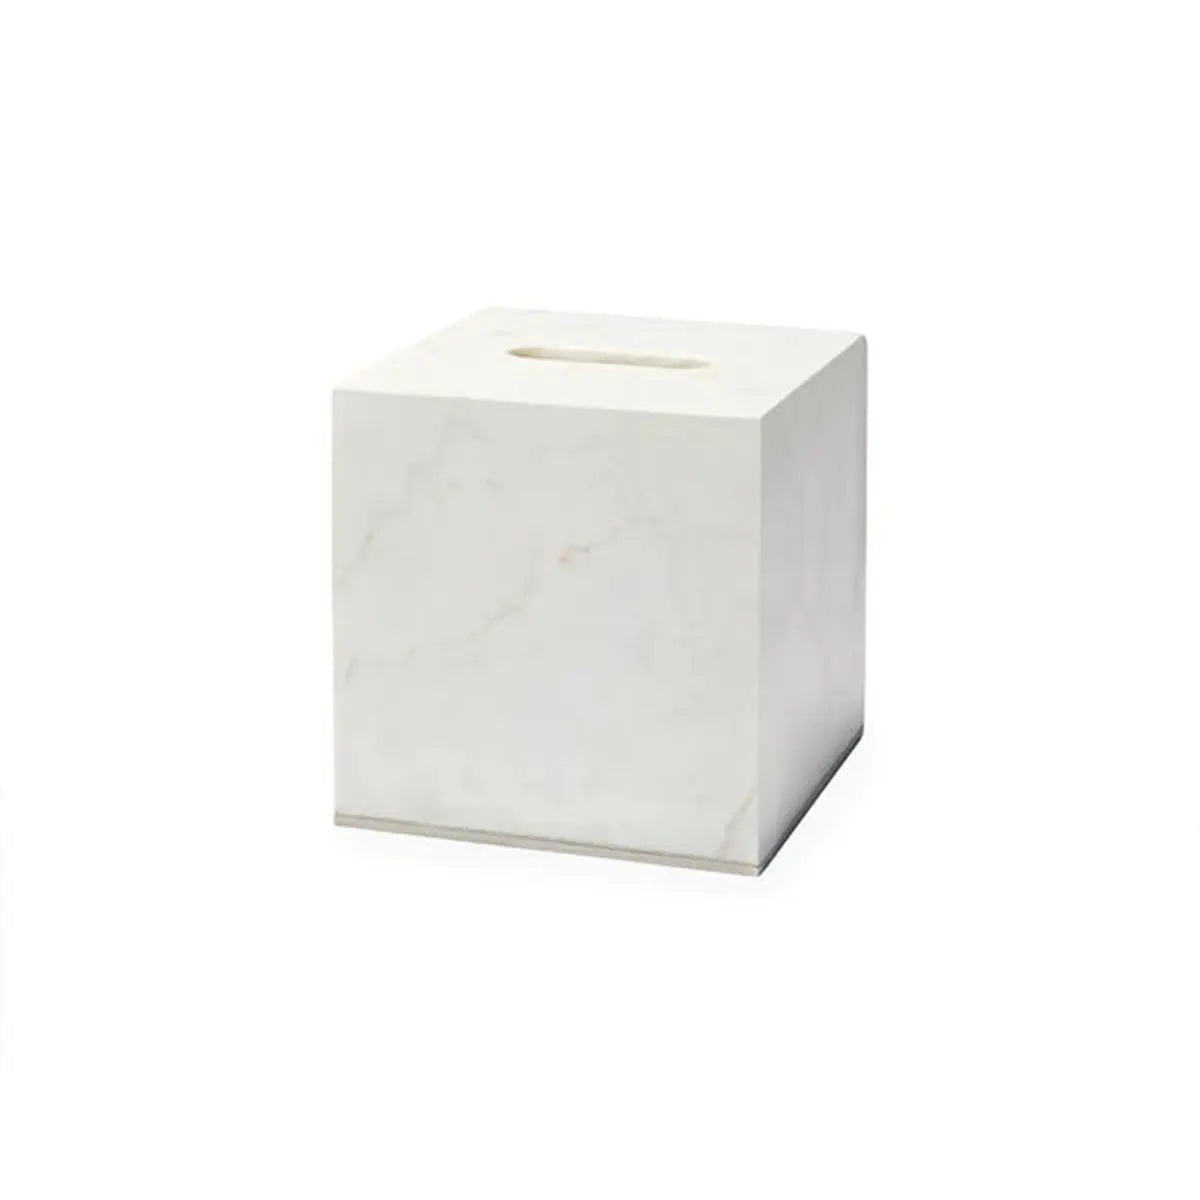 Sferra Pietra Marble Tissue Holder in White, Silver